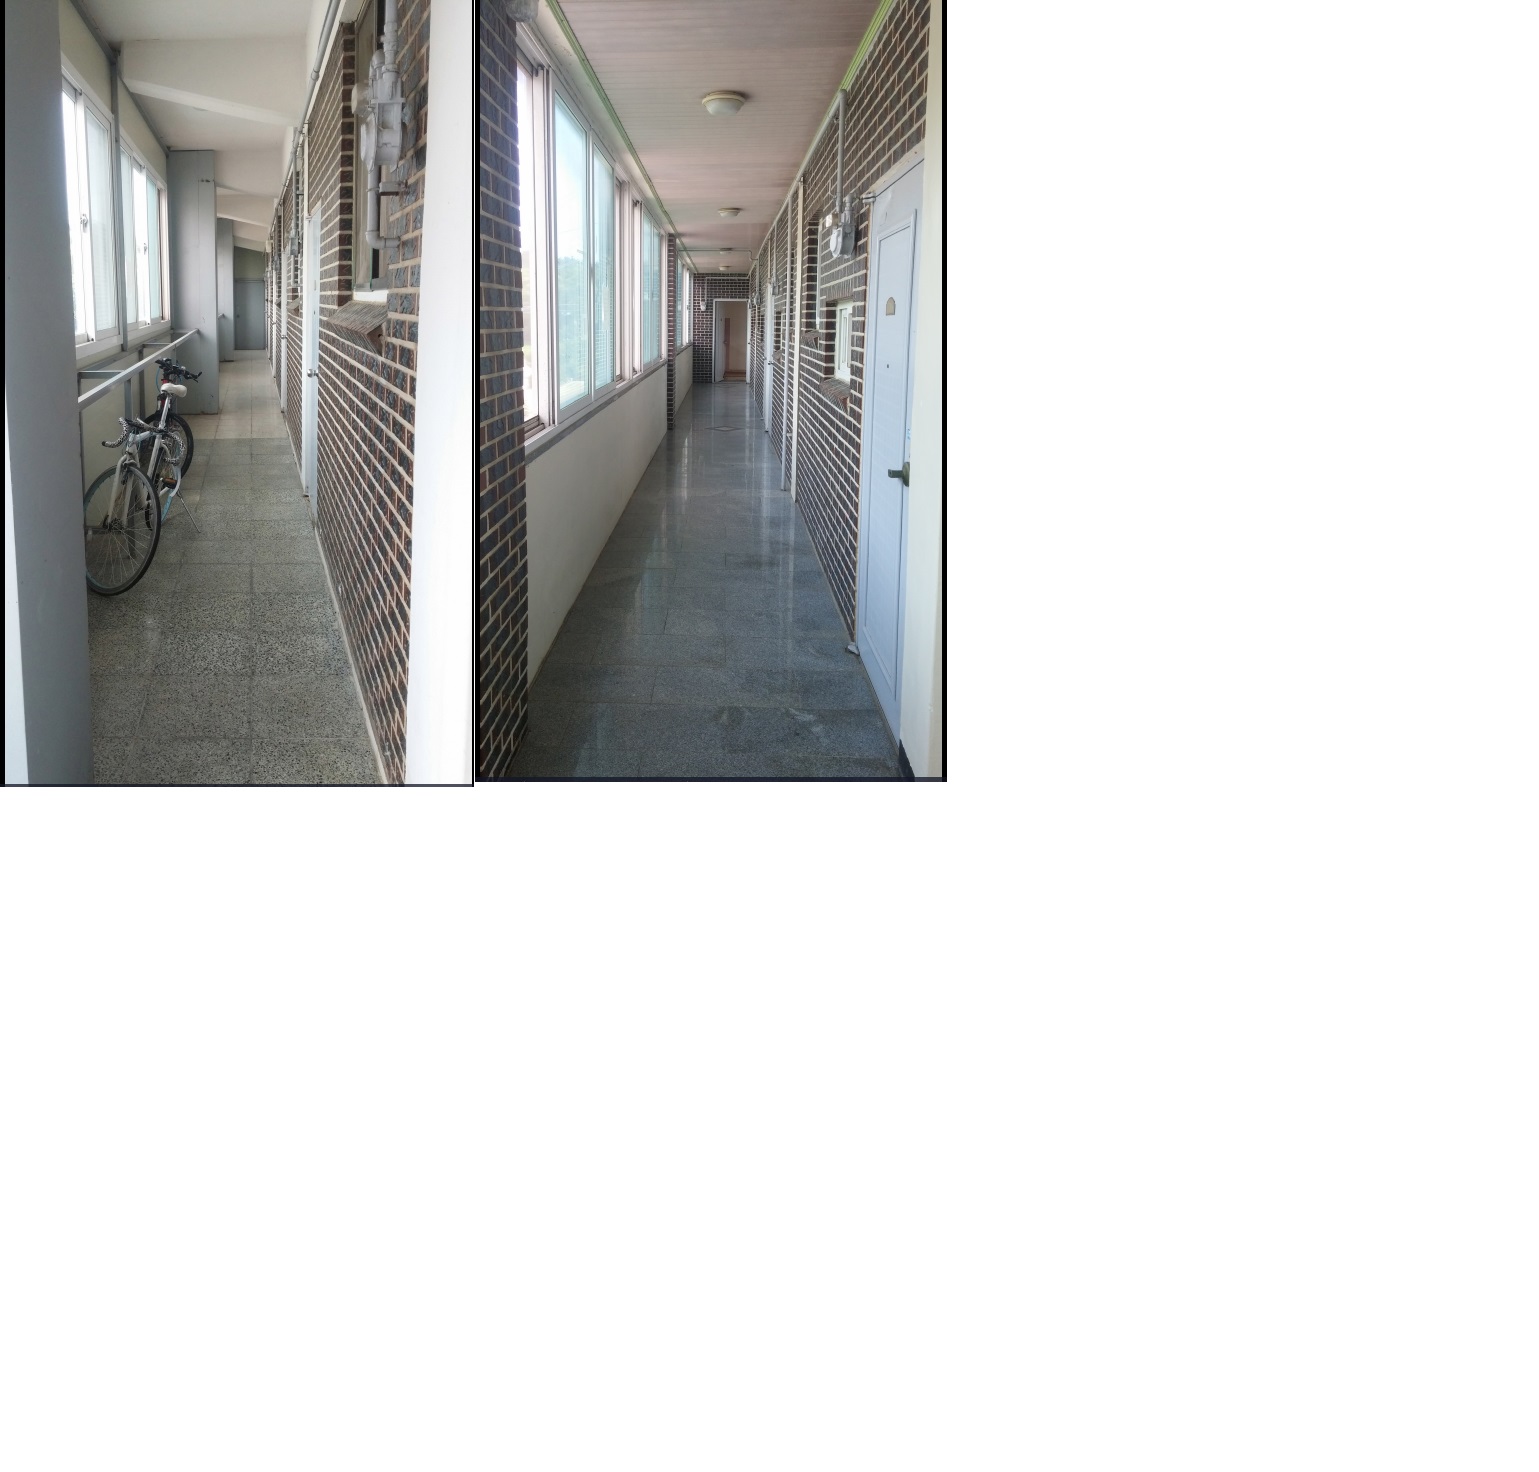 착한가격, 깨끗한 시설의 한국원룸 입니다. 이미지(1)